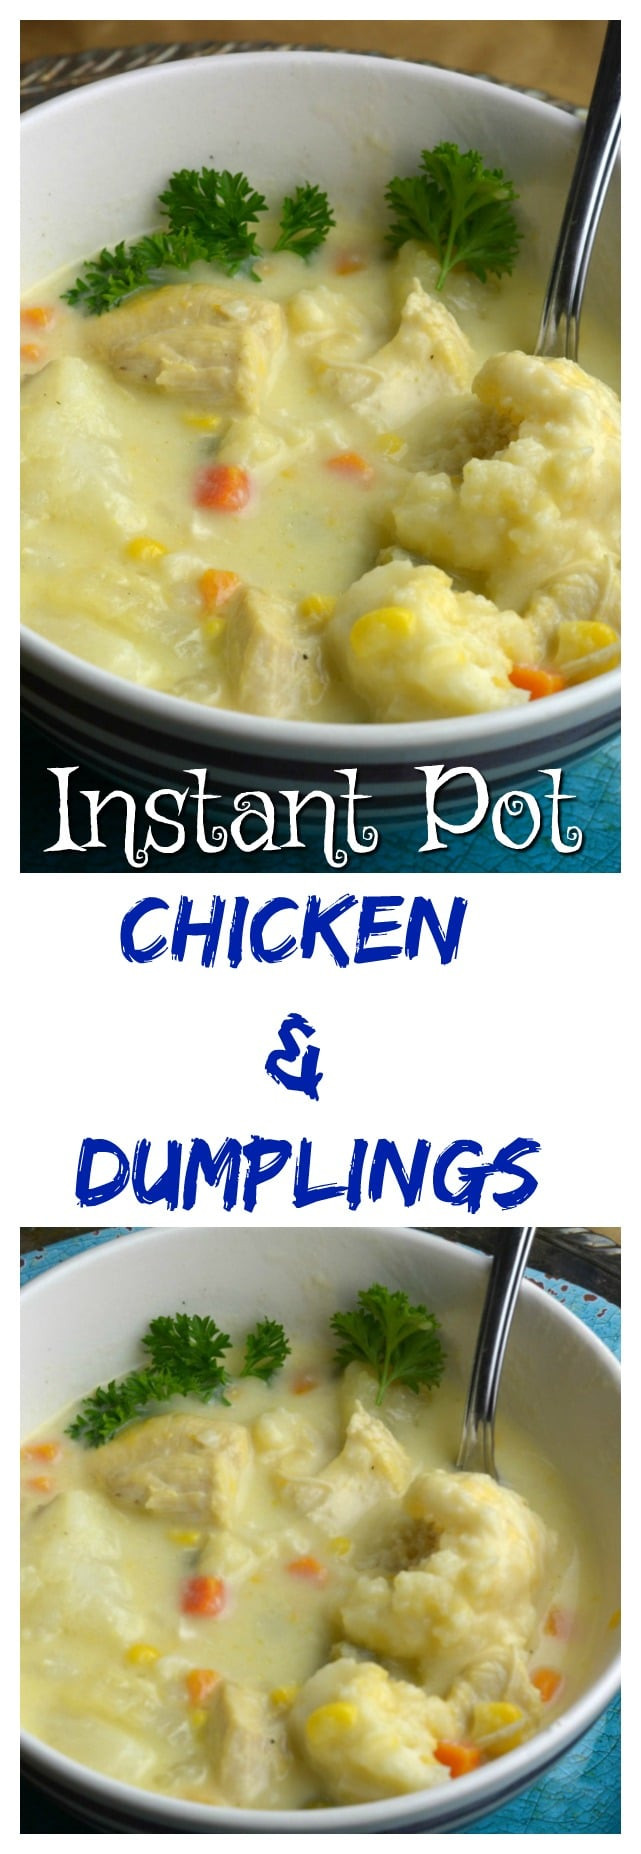 Chicken And Dumplings In Instant Pot
 Instant Pot Chicken and Dumplings Adventures of a Nurse